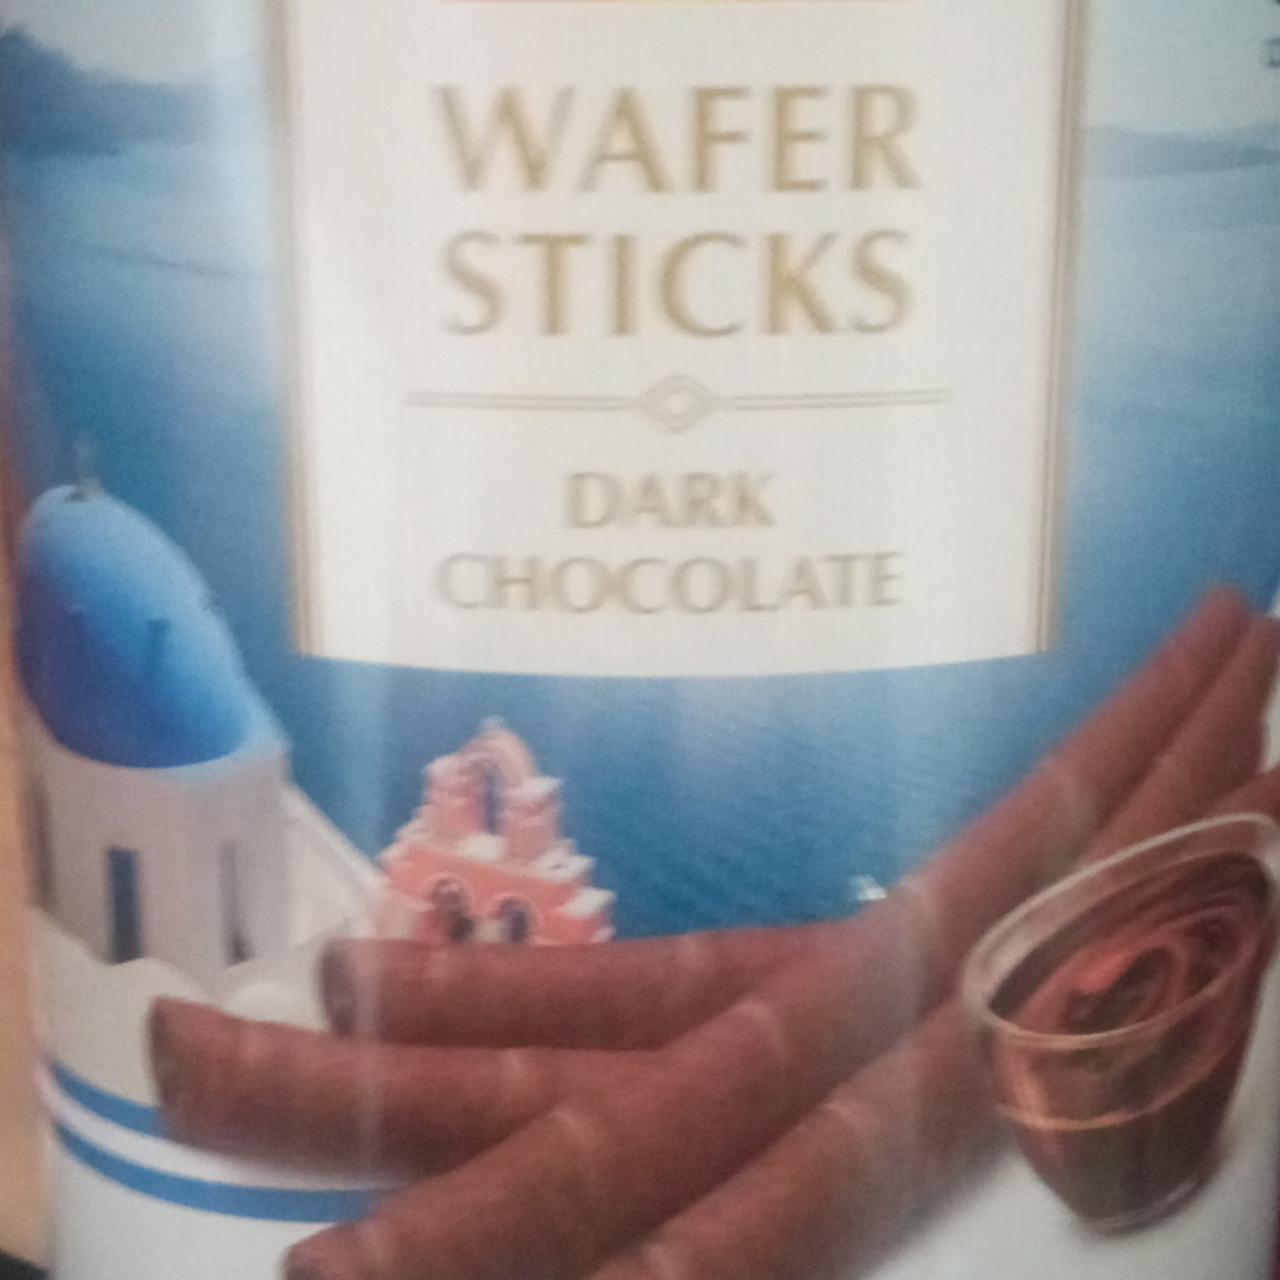 Фото - вафельные трубочки с шоколадным кремом Wafer sticks